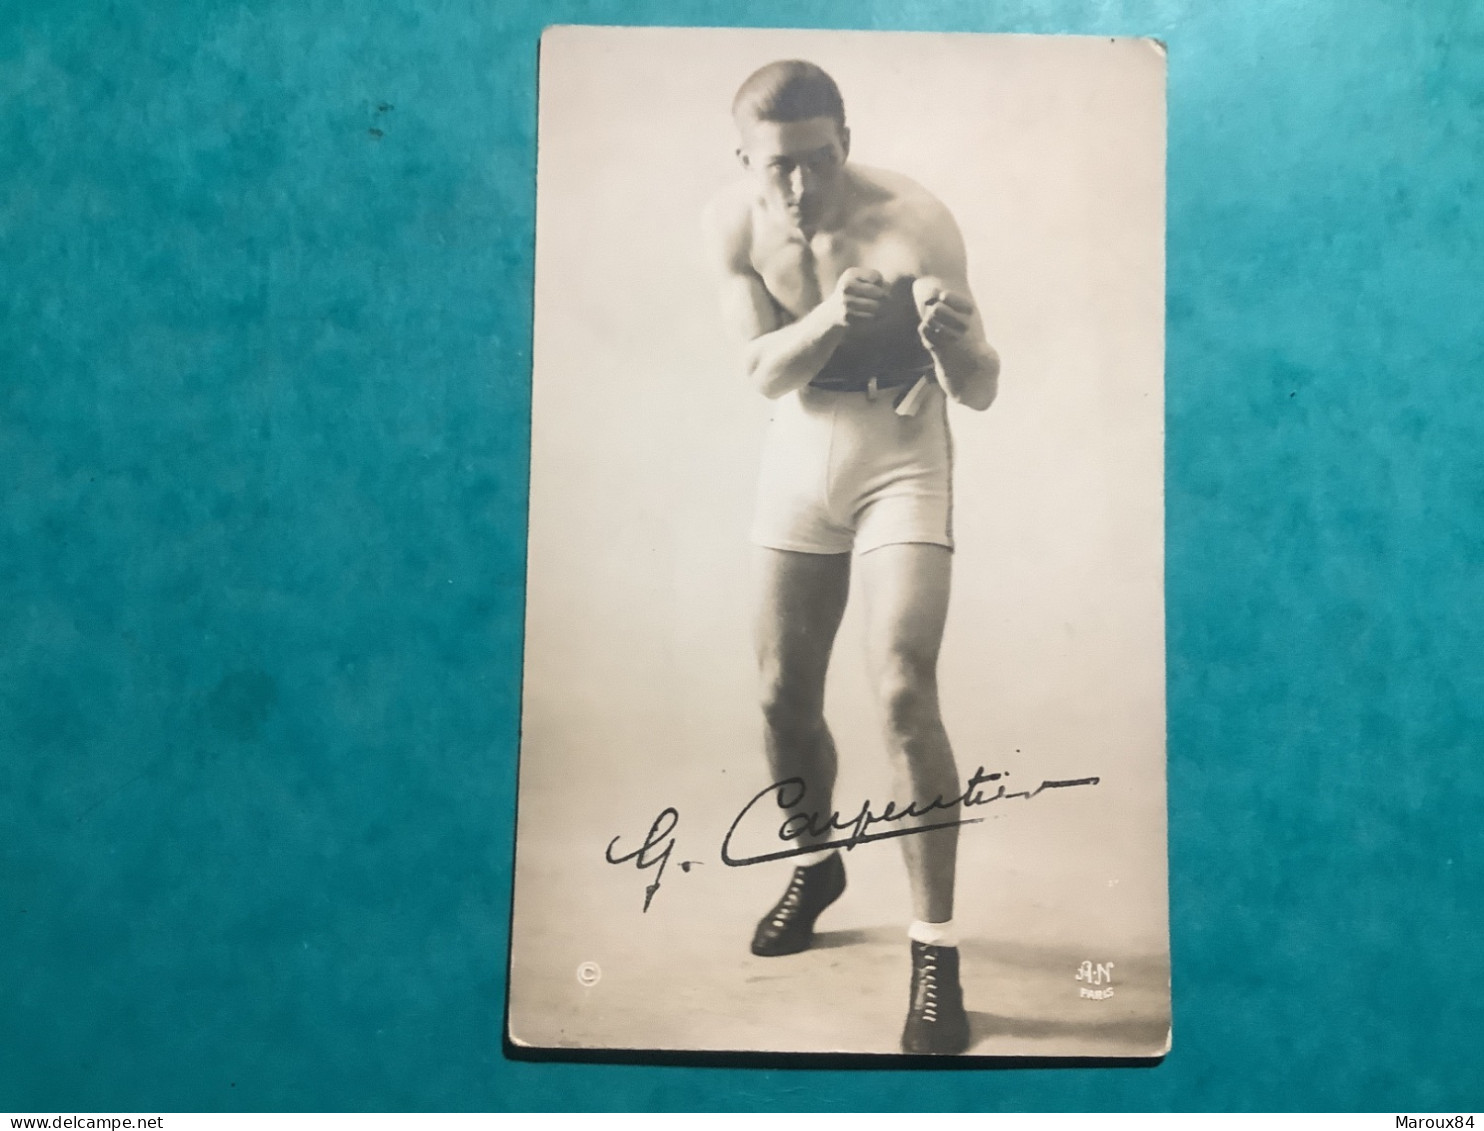 Carte Photo Boxeur G.Carpentier. Signature  Photo. A.n - Boxing